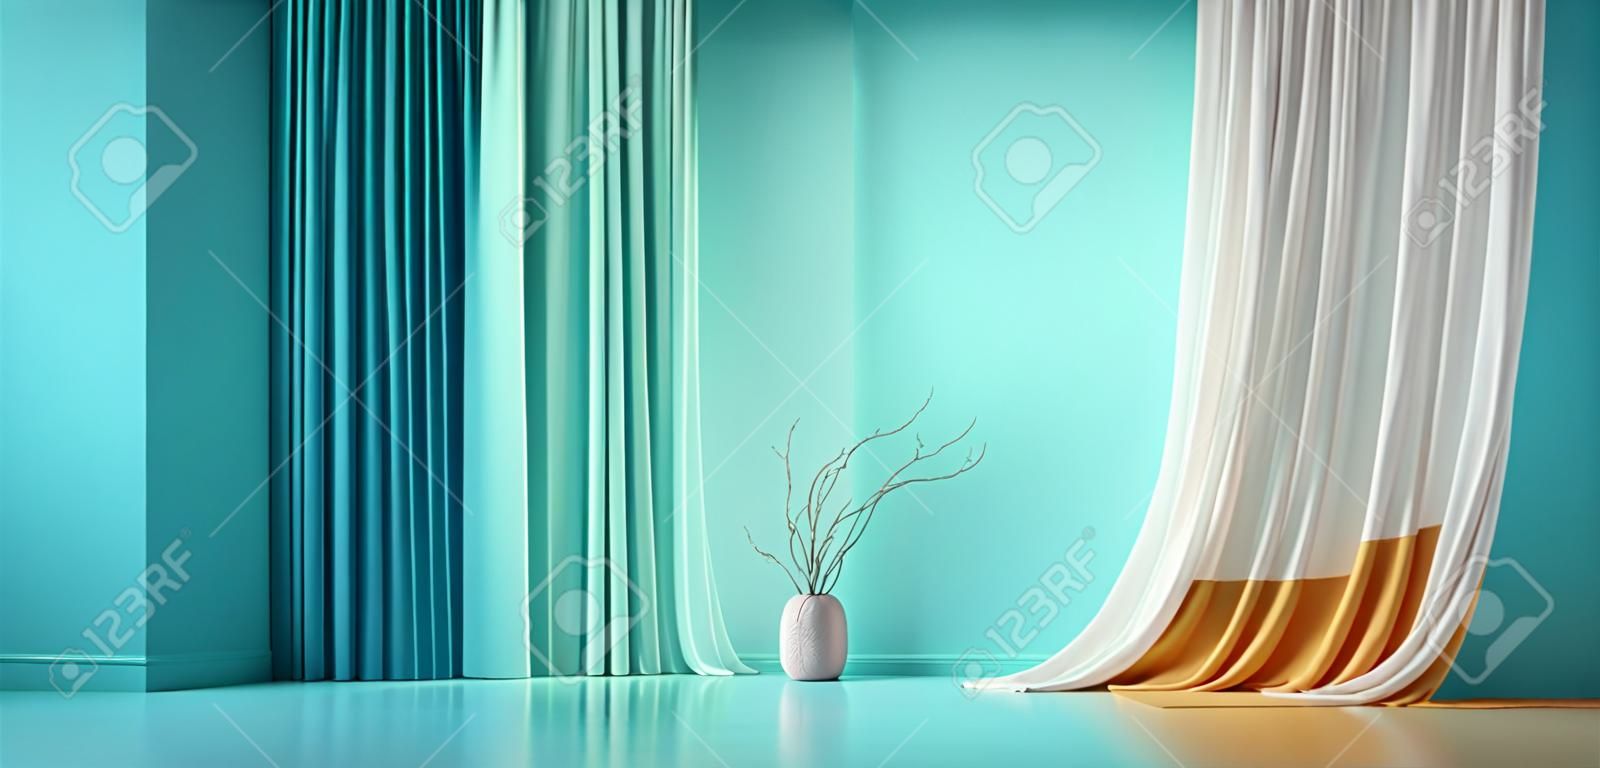 Parete vuota verde blu turchese pastello in camera con tendaggi di seta colorata. mock up modello per la presentazione del prodotto. soggiorno, galleria, studio, concetto di ufficio. rappresentazione 3d